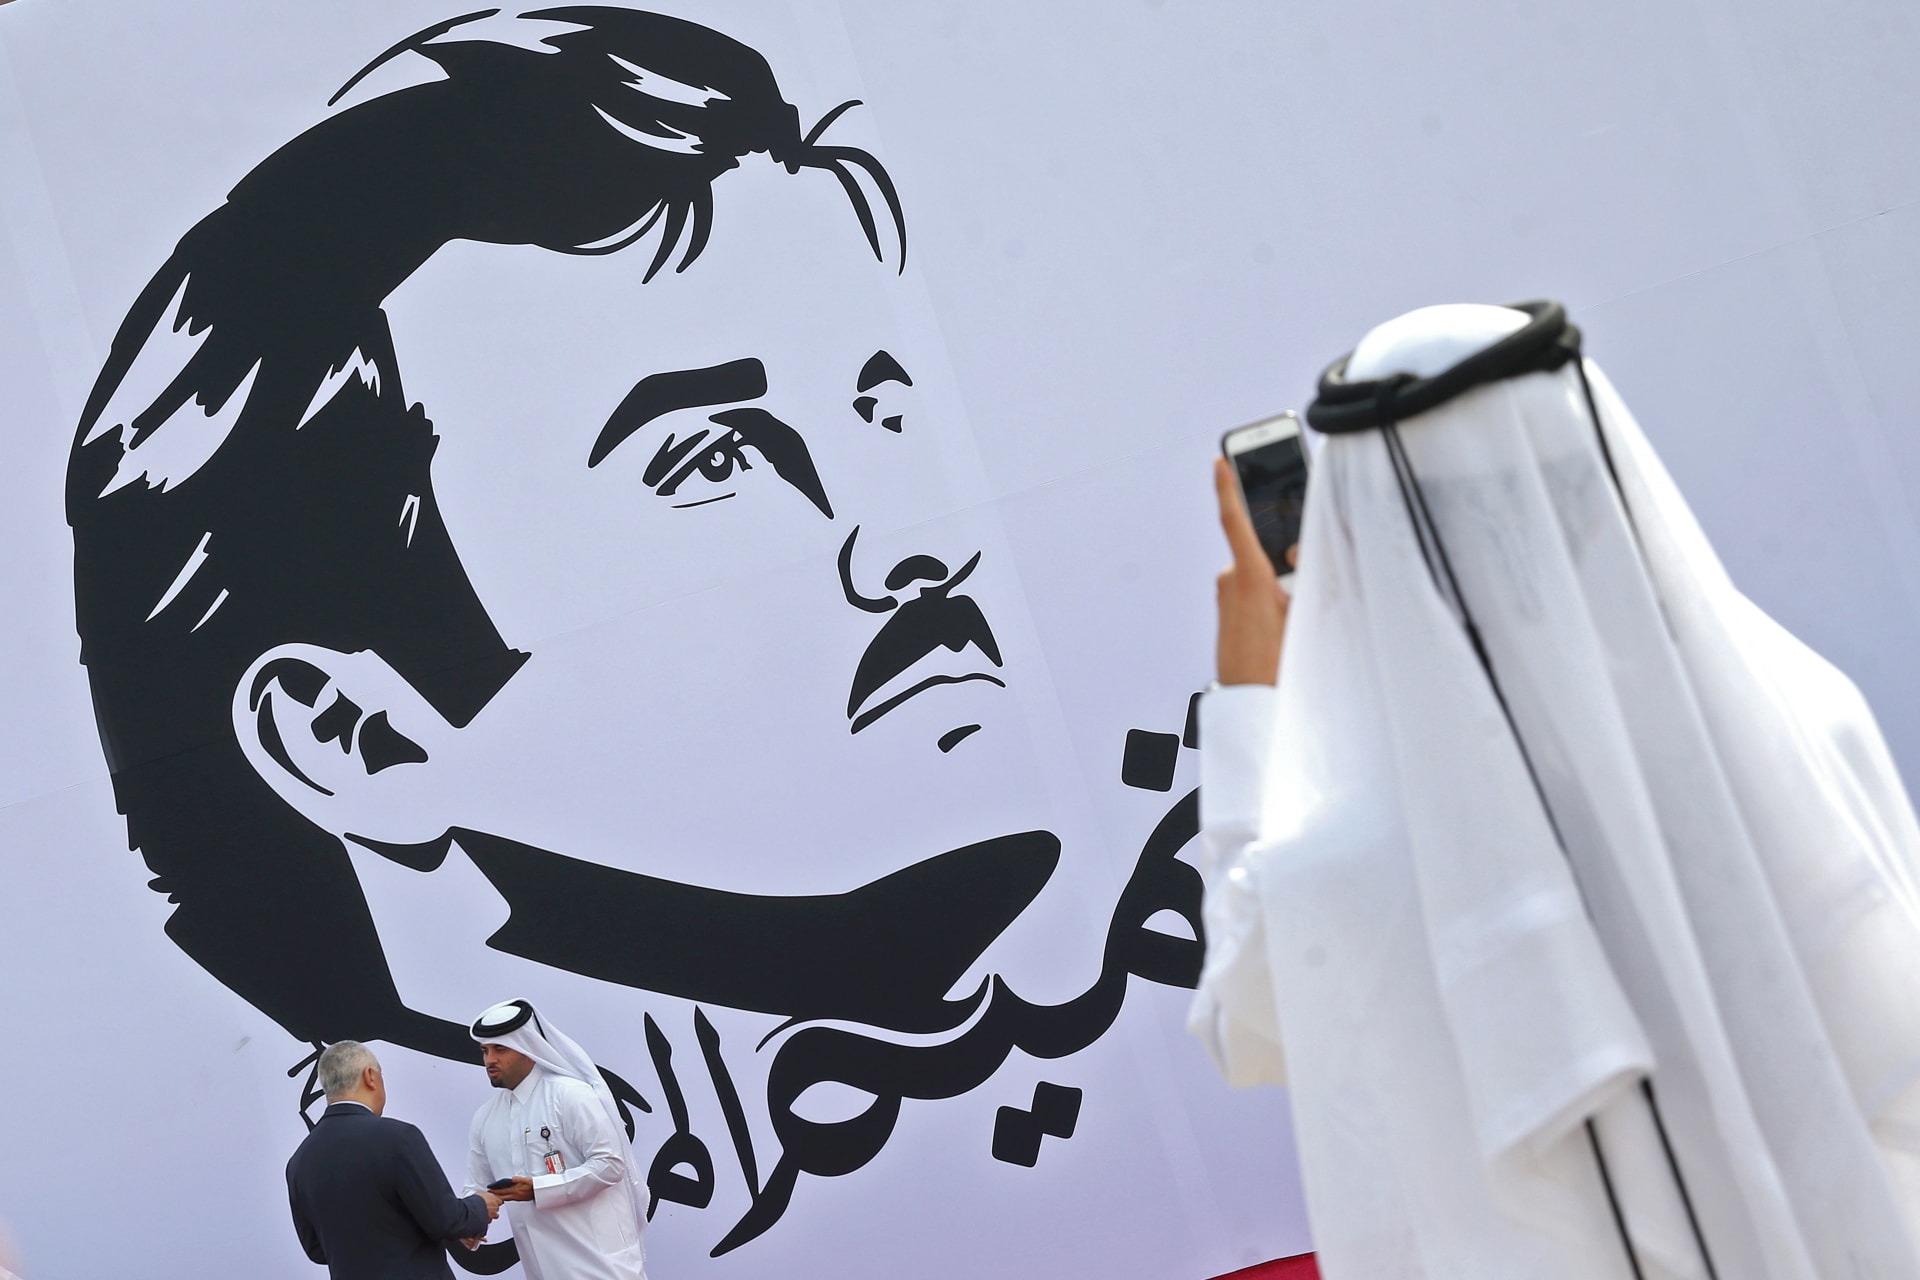 بعد خطاب الأمير.. وسم "كلمة تميم المجد" يتصدر تويتر في قطر